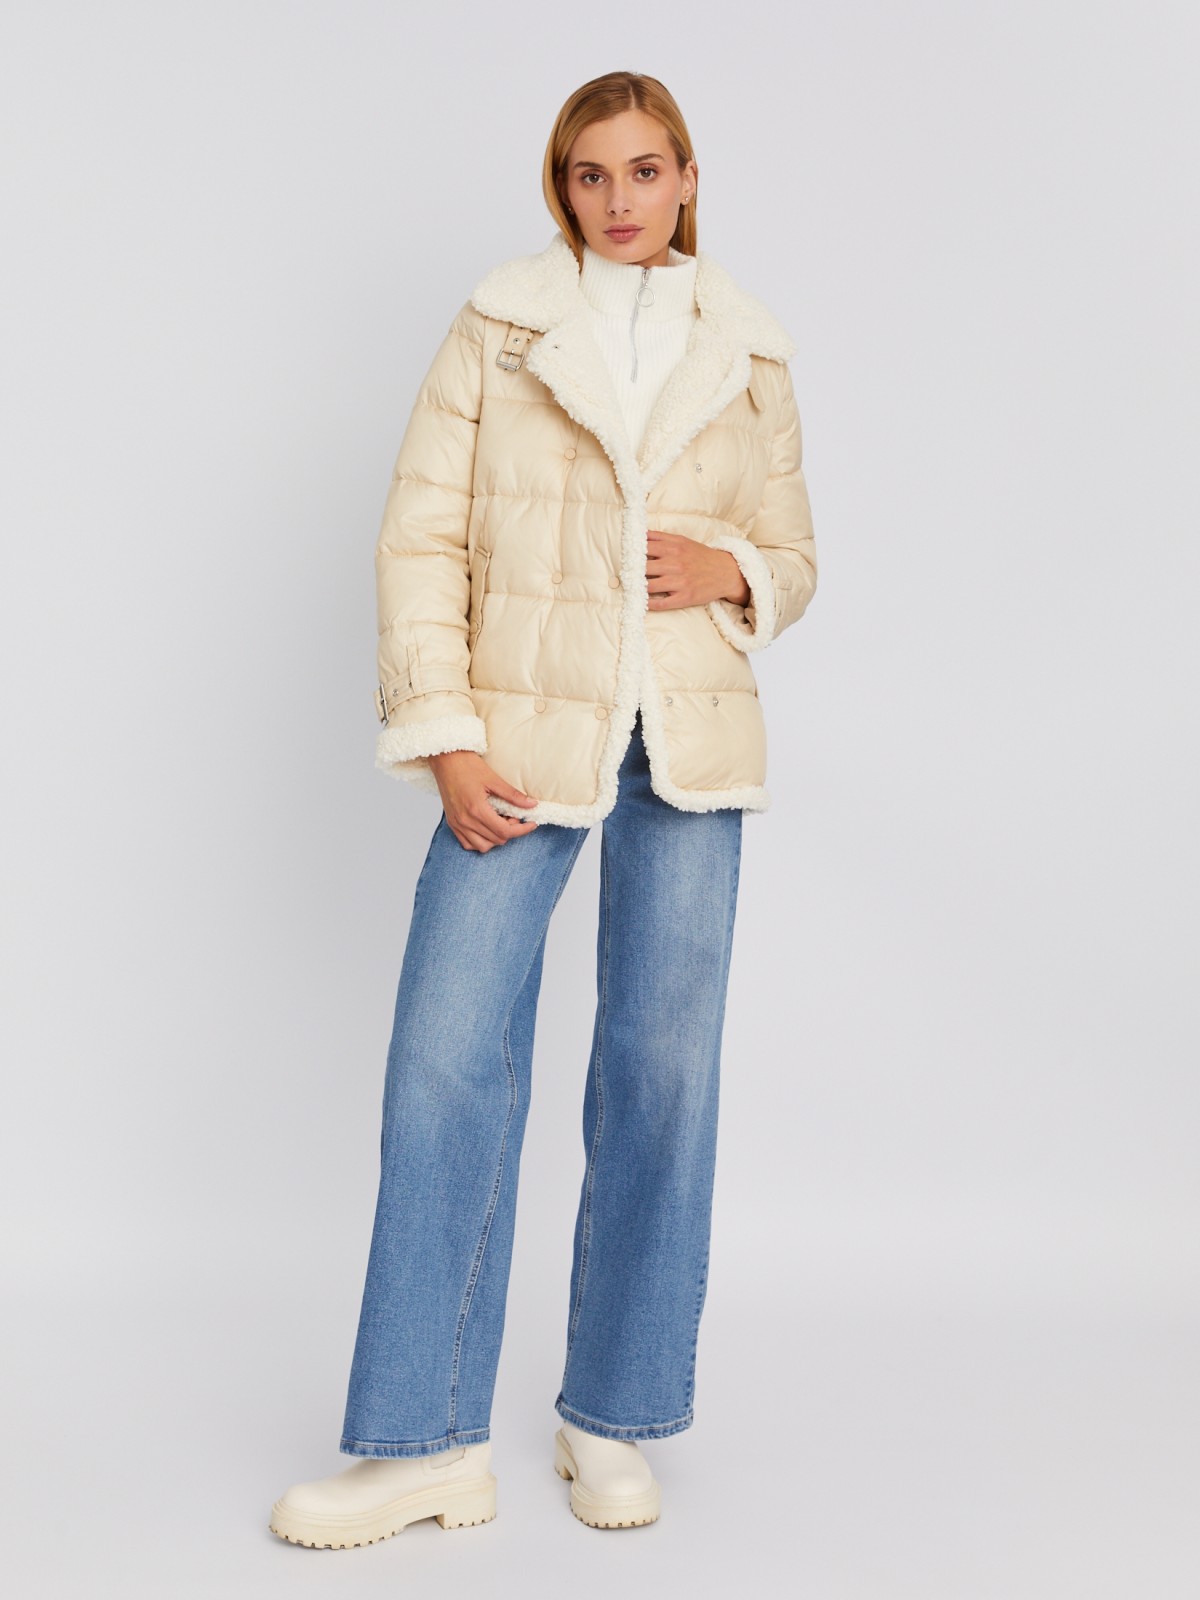 Утеплённая стёганая куртка с отложным воротником и отделкой из искусственного меха zolla 023335112354, цвет молоко, размер M - фото 2